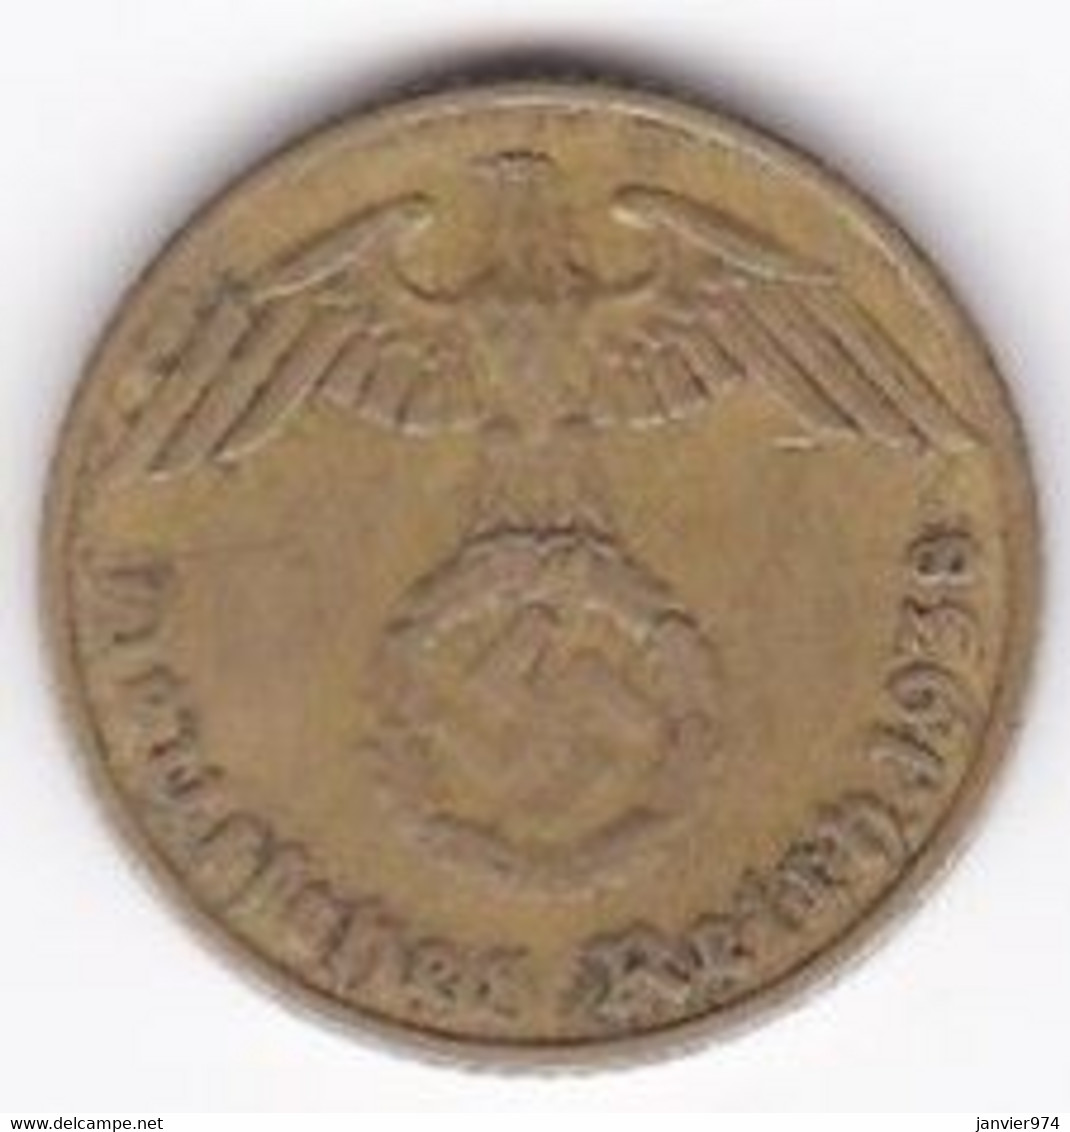 5 Reichspfennig 1938 F (STUTGART) Bronze-aluminium - 5 Reichspfennig